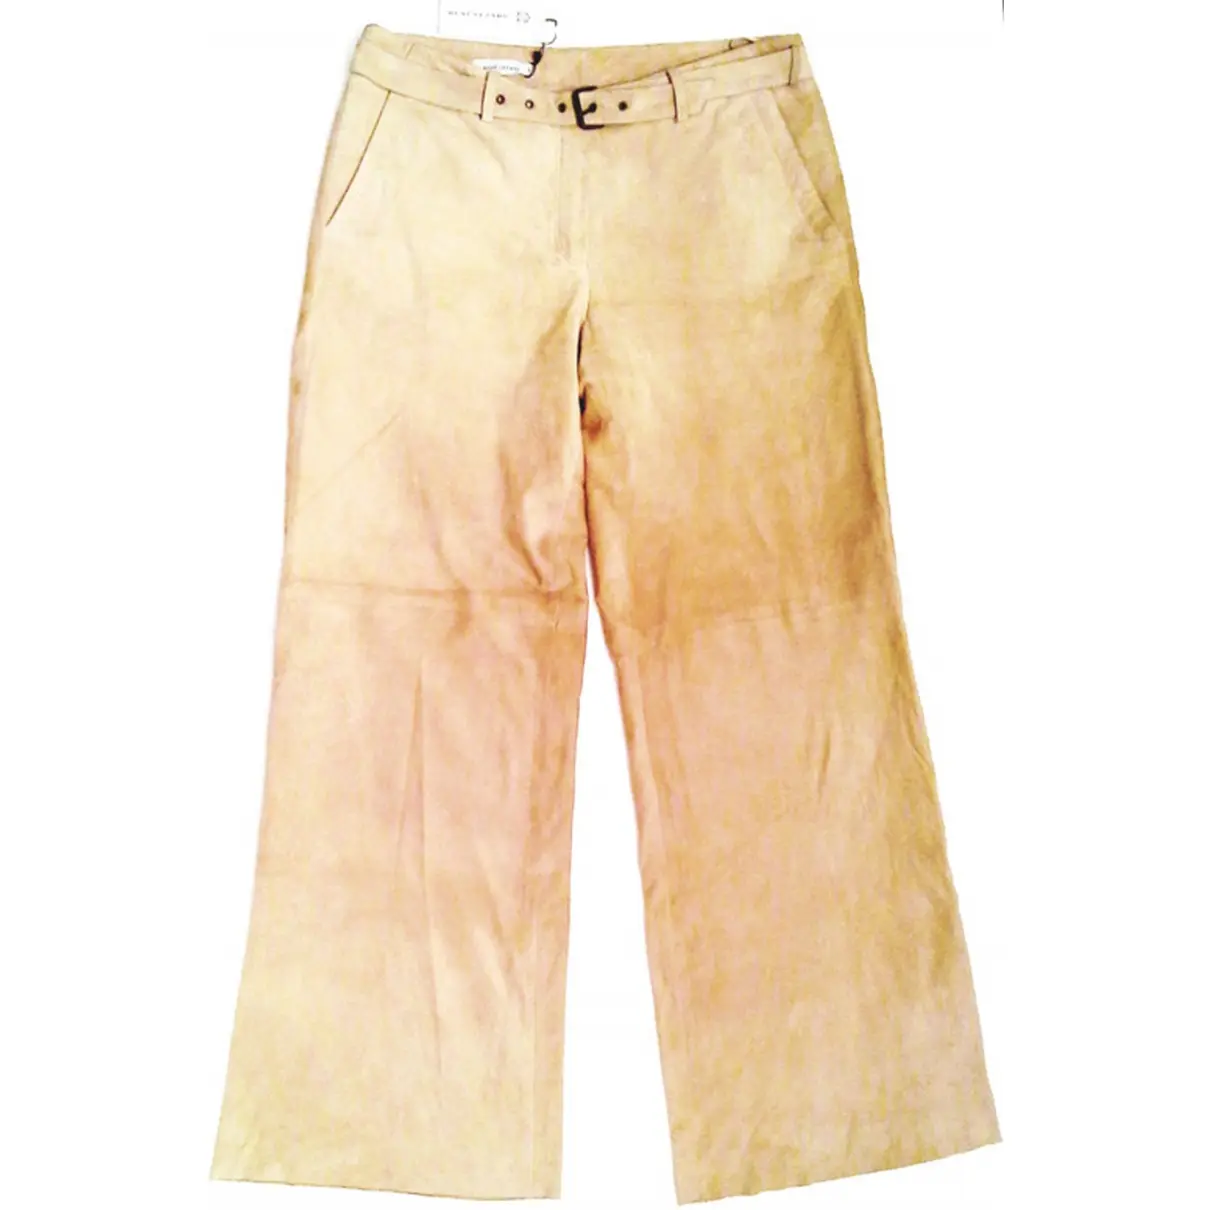 RENÉ LEZARD Large pants for sale